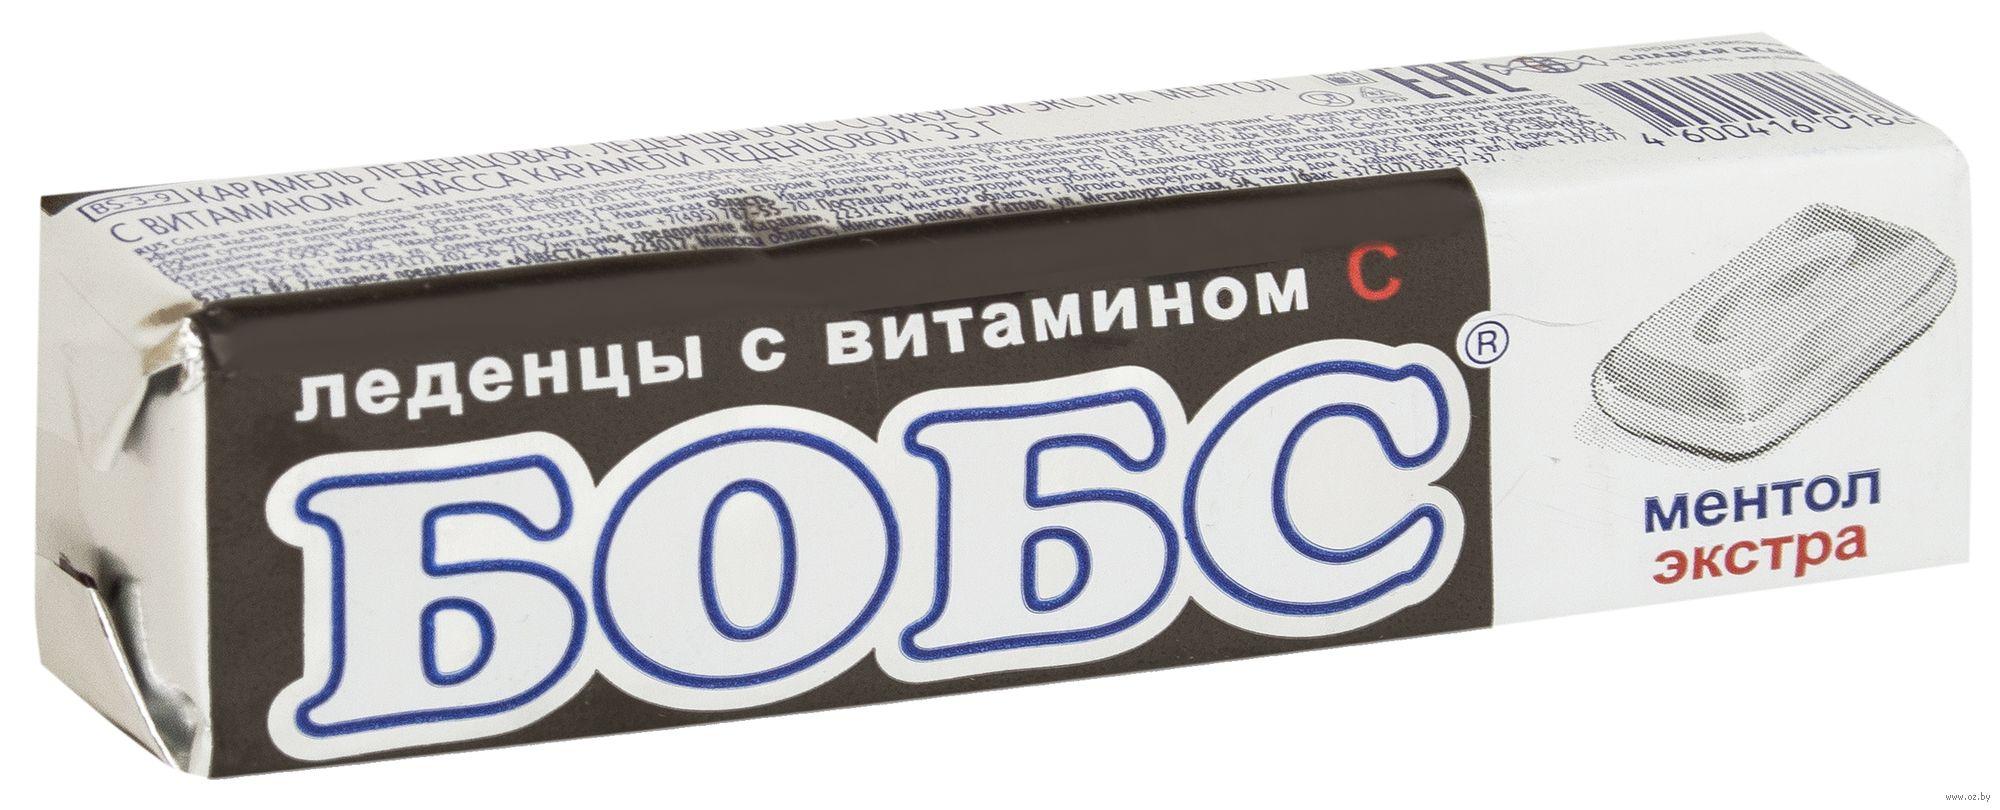 Леденцы Бобс экстра ментол с витамином С, 35 гр., обертка фольга / бумага